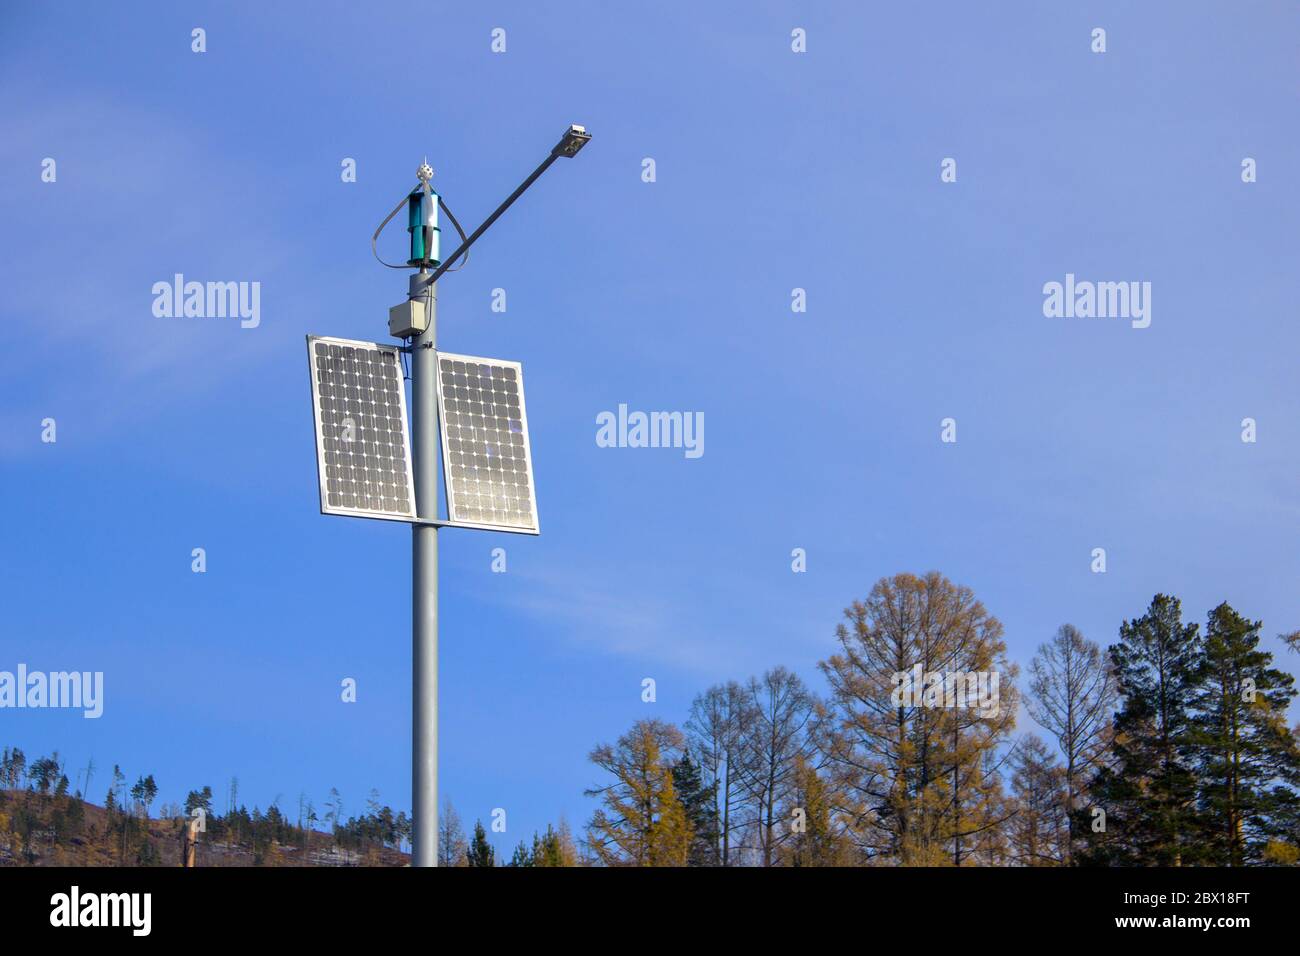 Solar Panels for street lighting, Solar Power Energy, Renewable Energy for track lighting Stock Photo